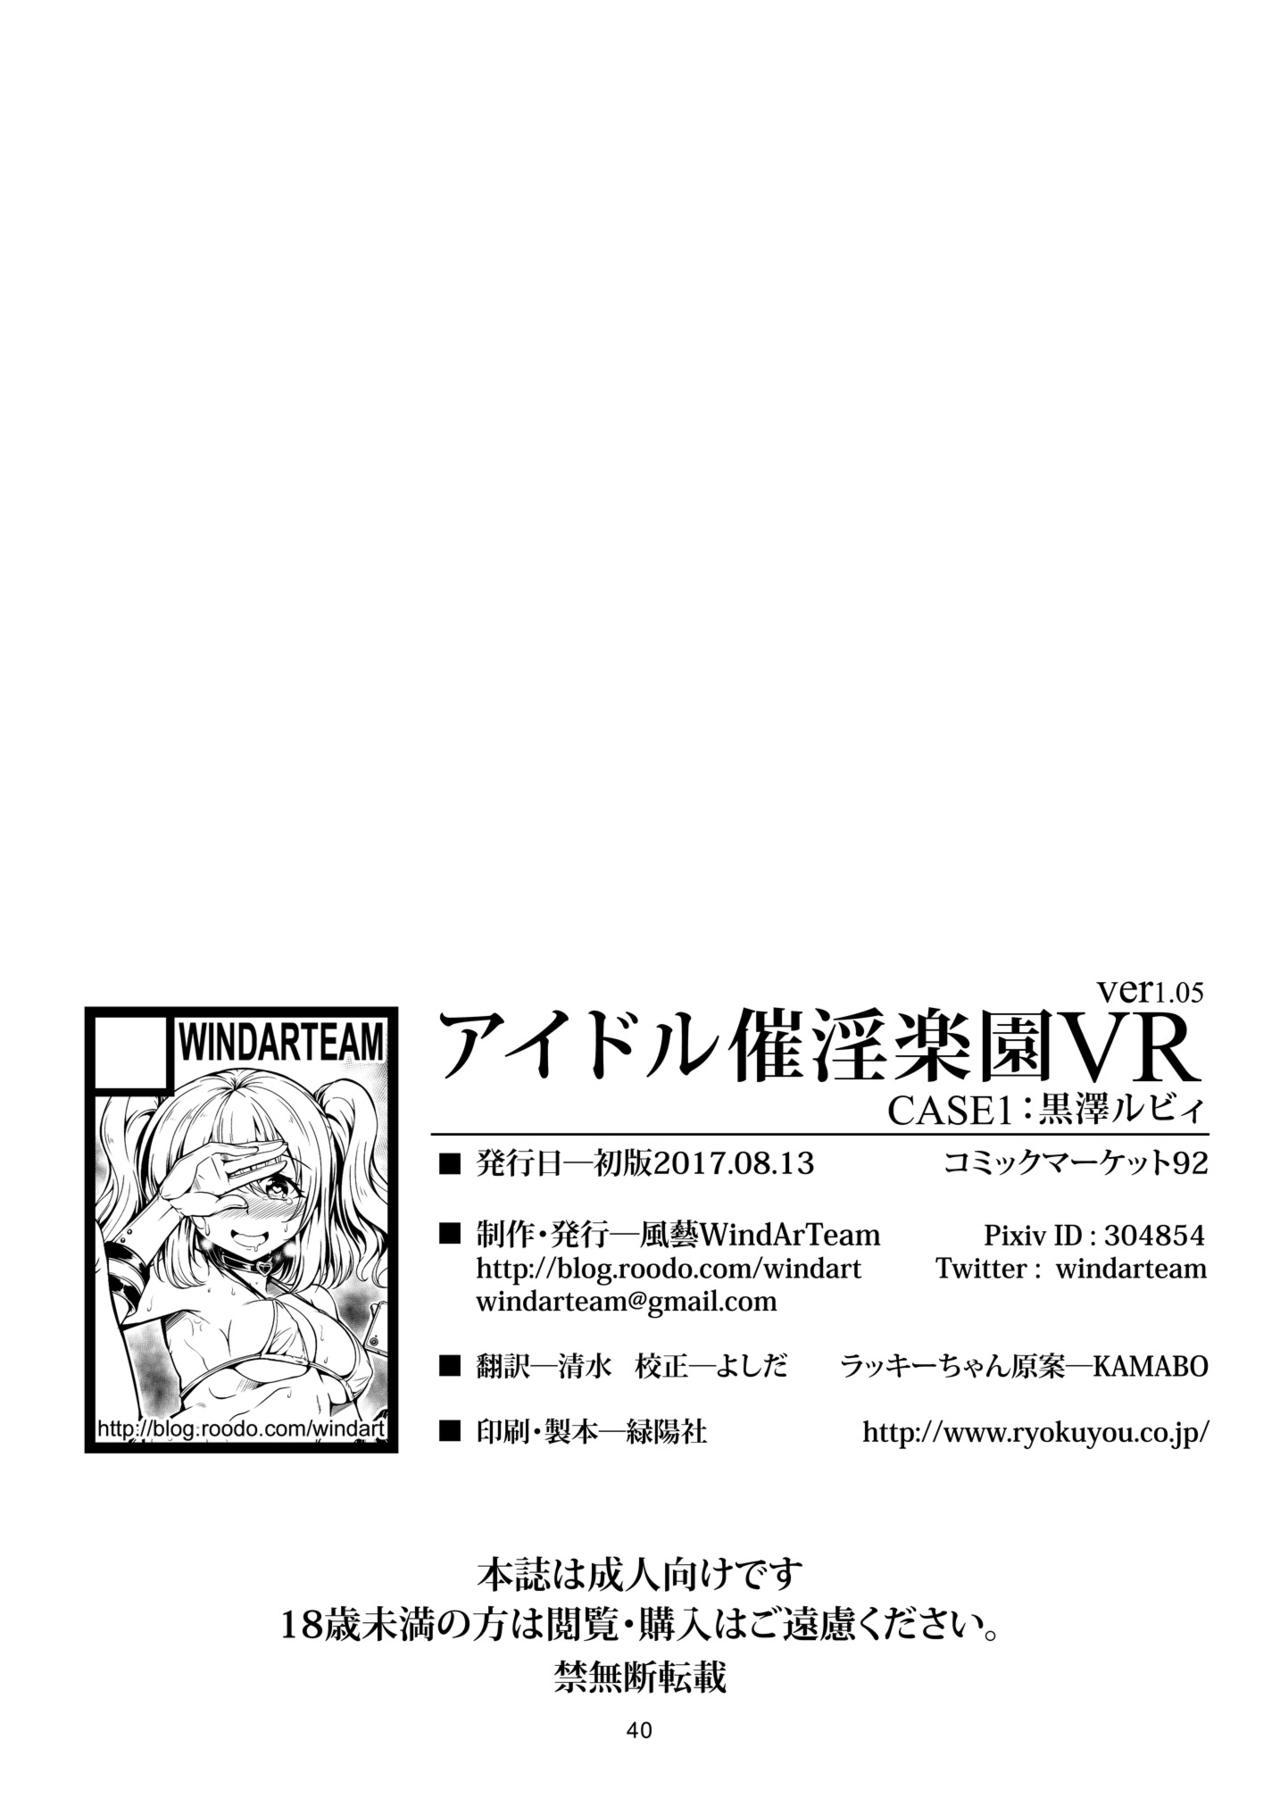 Idol Saiin Rakuen VR CASE1: Kurosawa Ruby ver 1.05 43